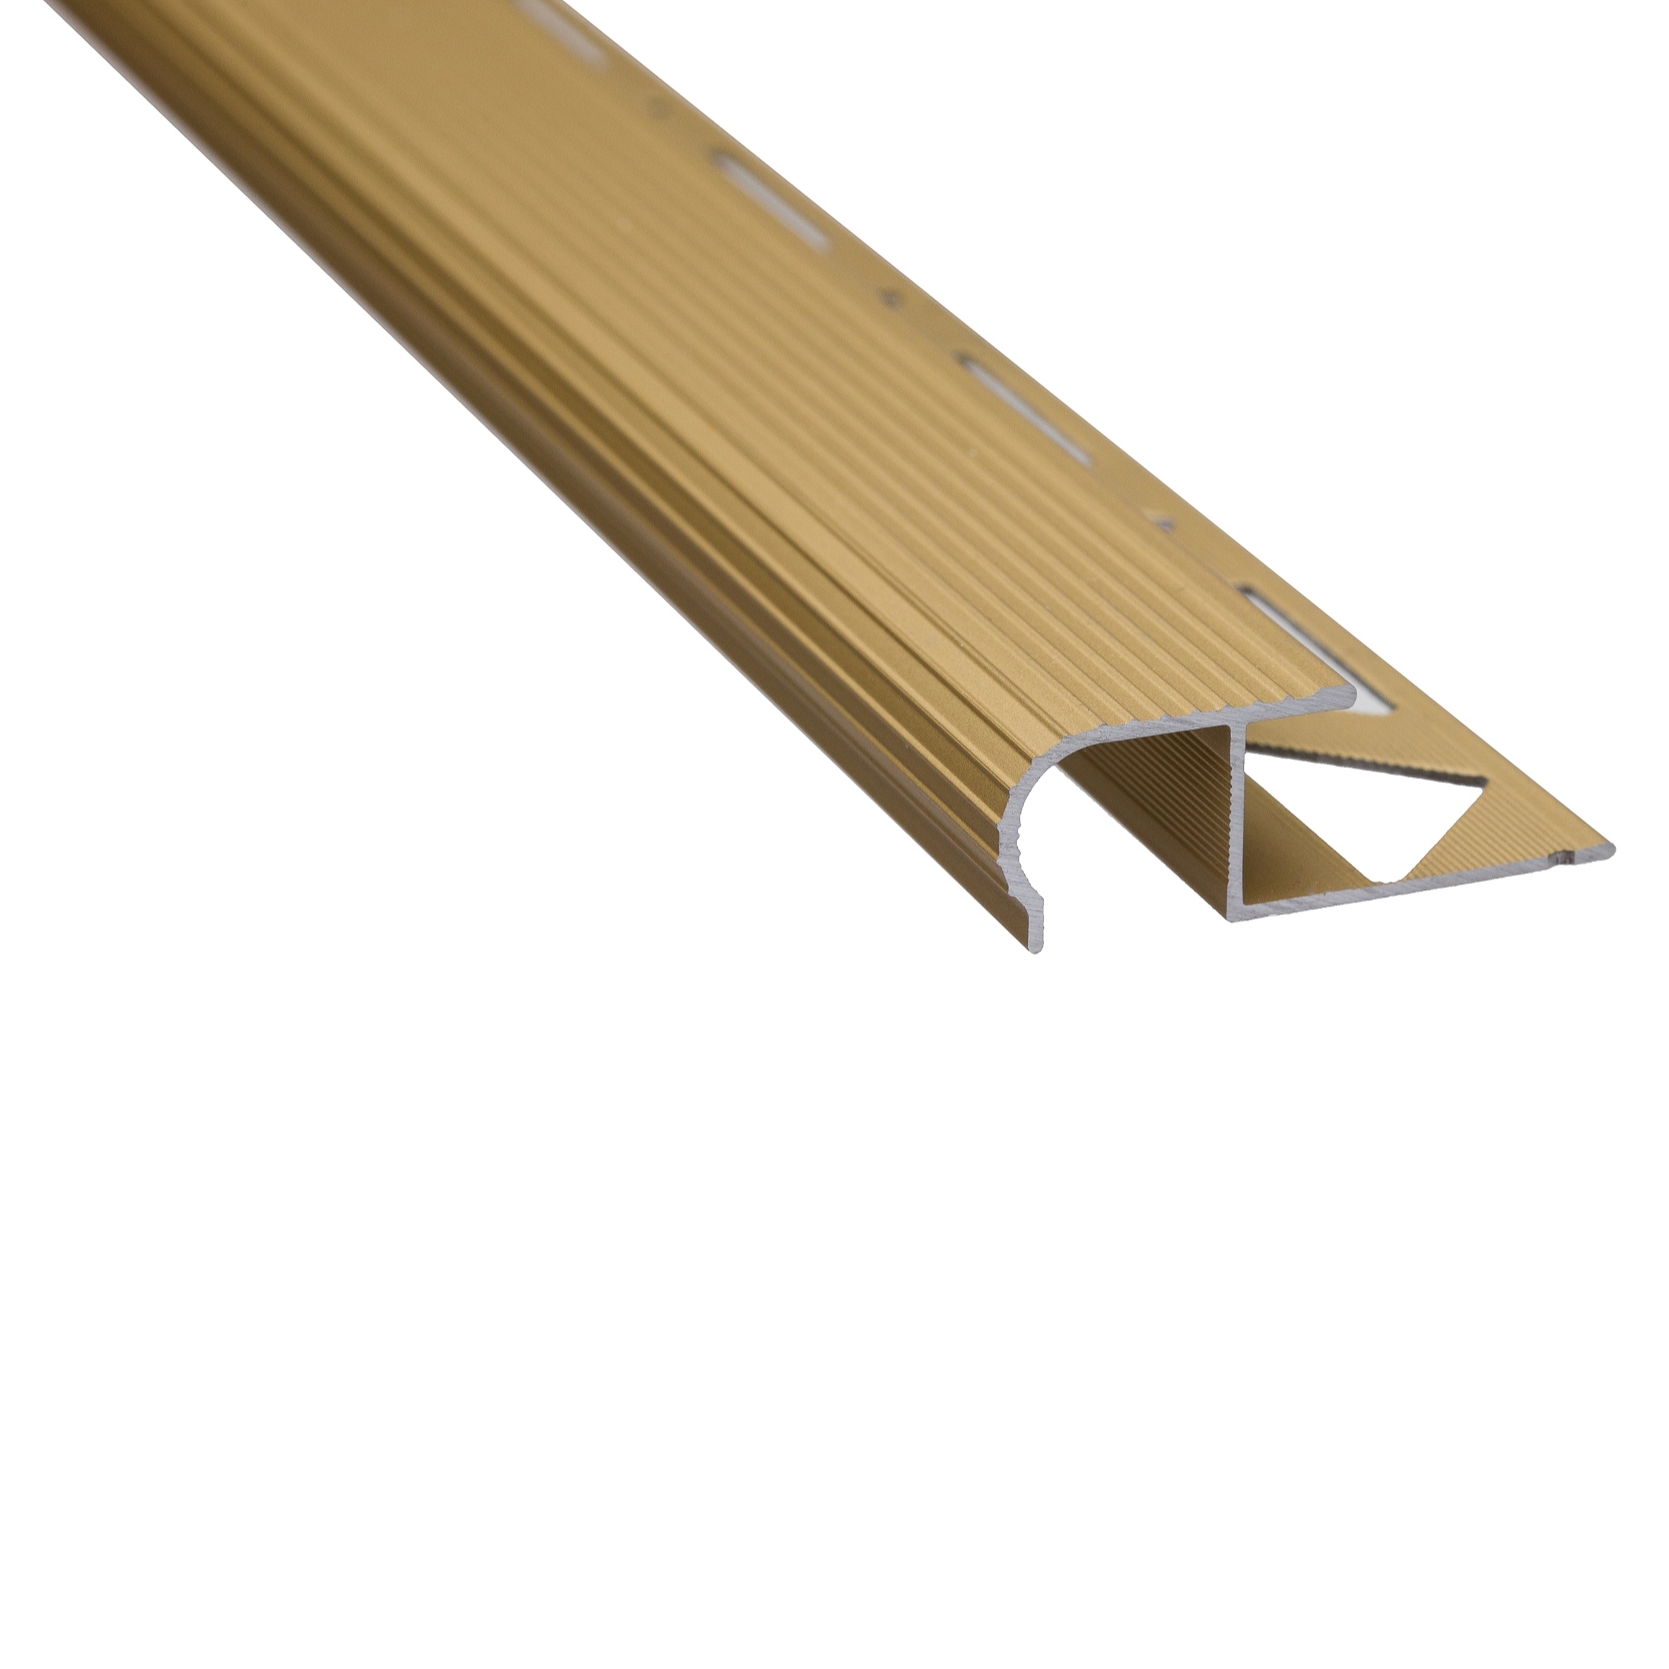 Profil aluminiu pentru treapta, incorporabil, SET S81 auriu, 2.5 m